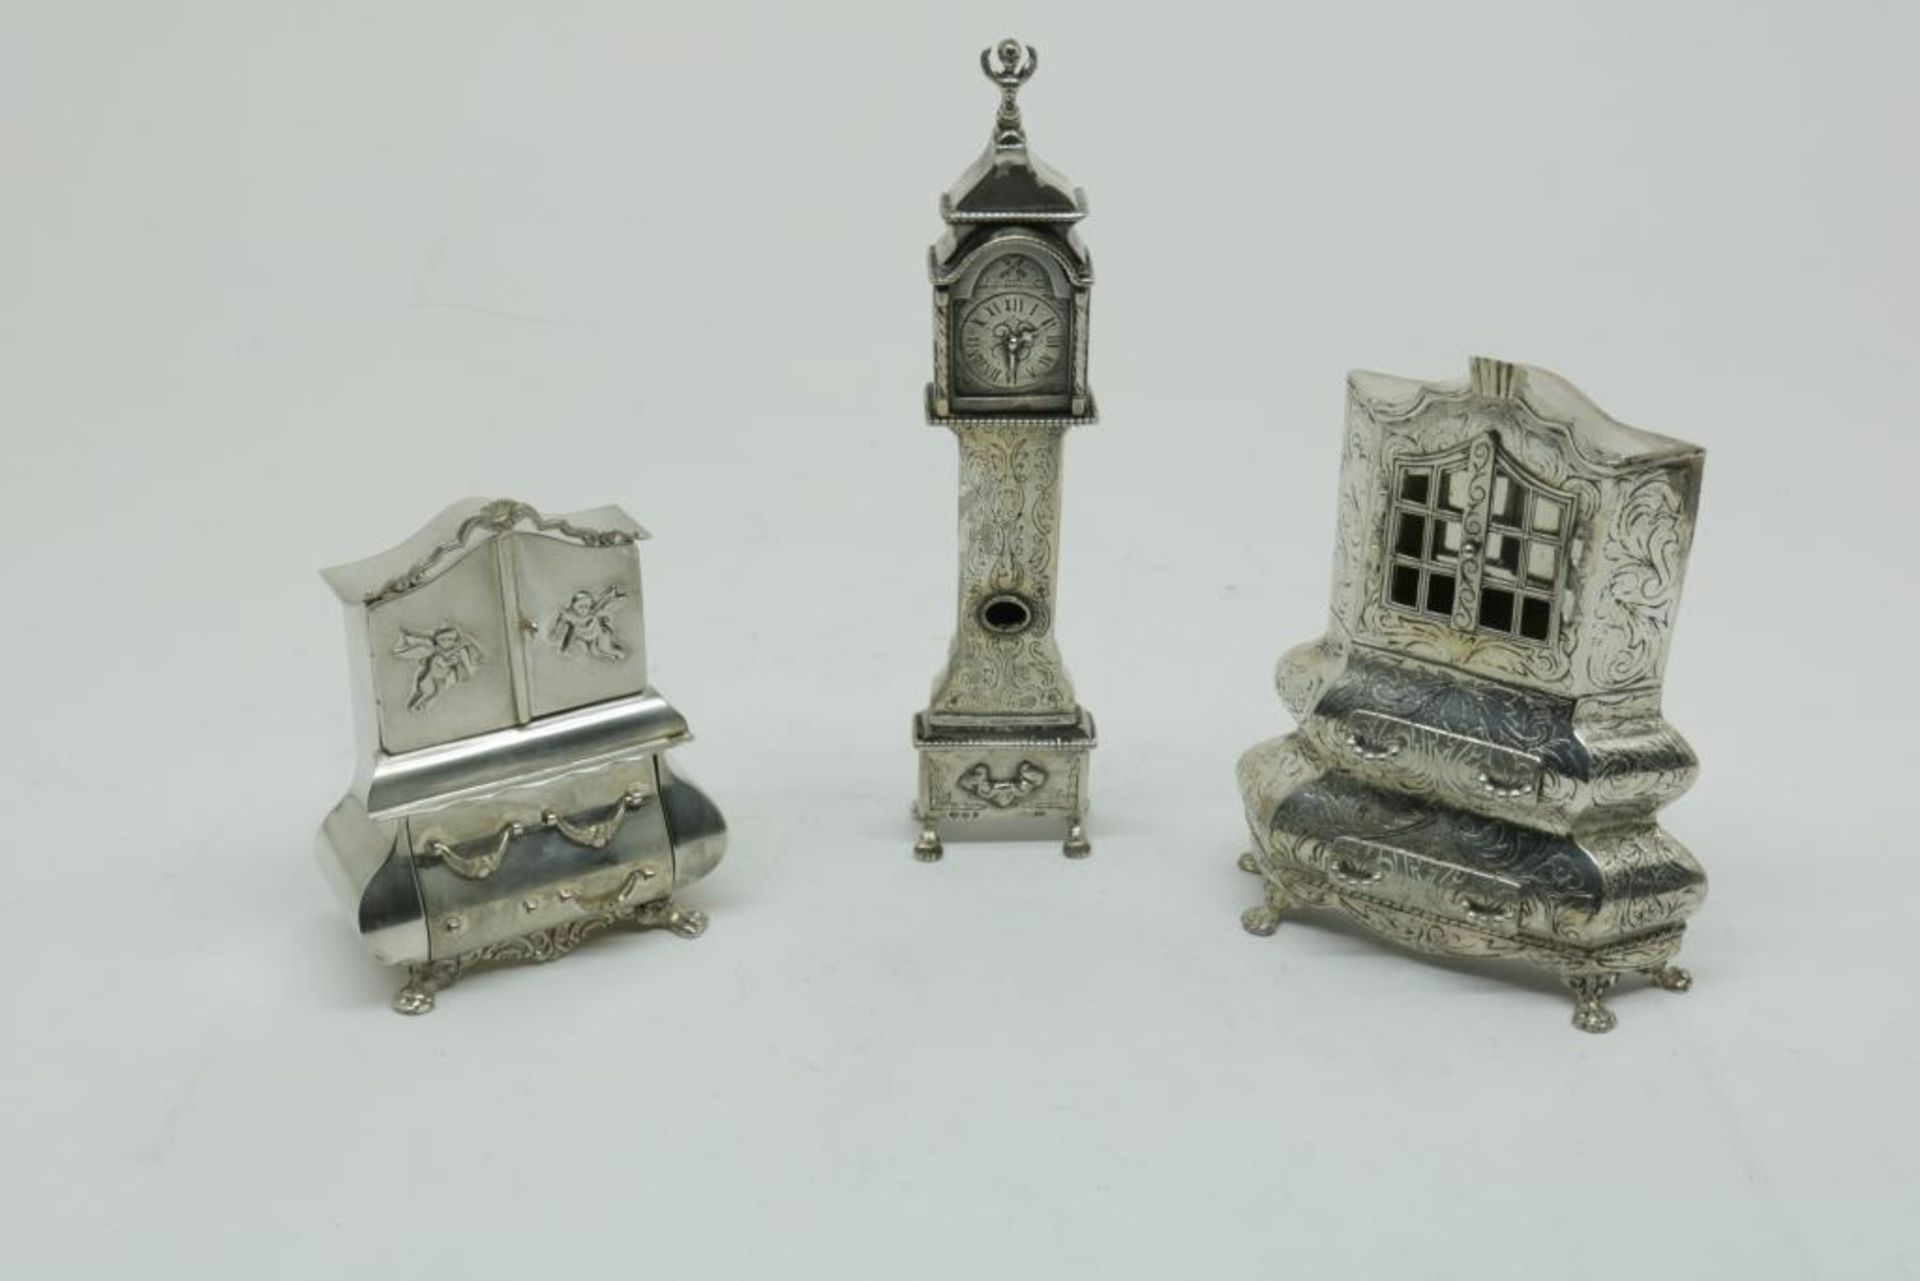 Lot div. silver miniatures, ao. clock, 835/000, gross w. 371gr, defects.Lot divers zilveren